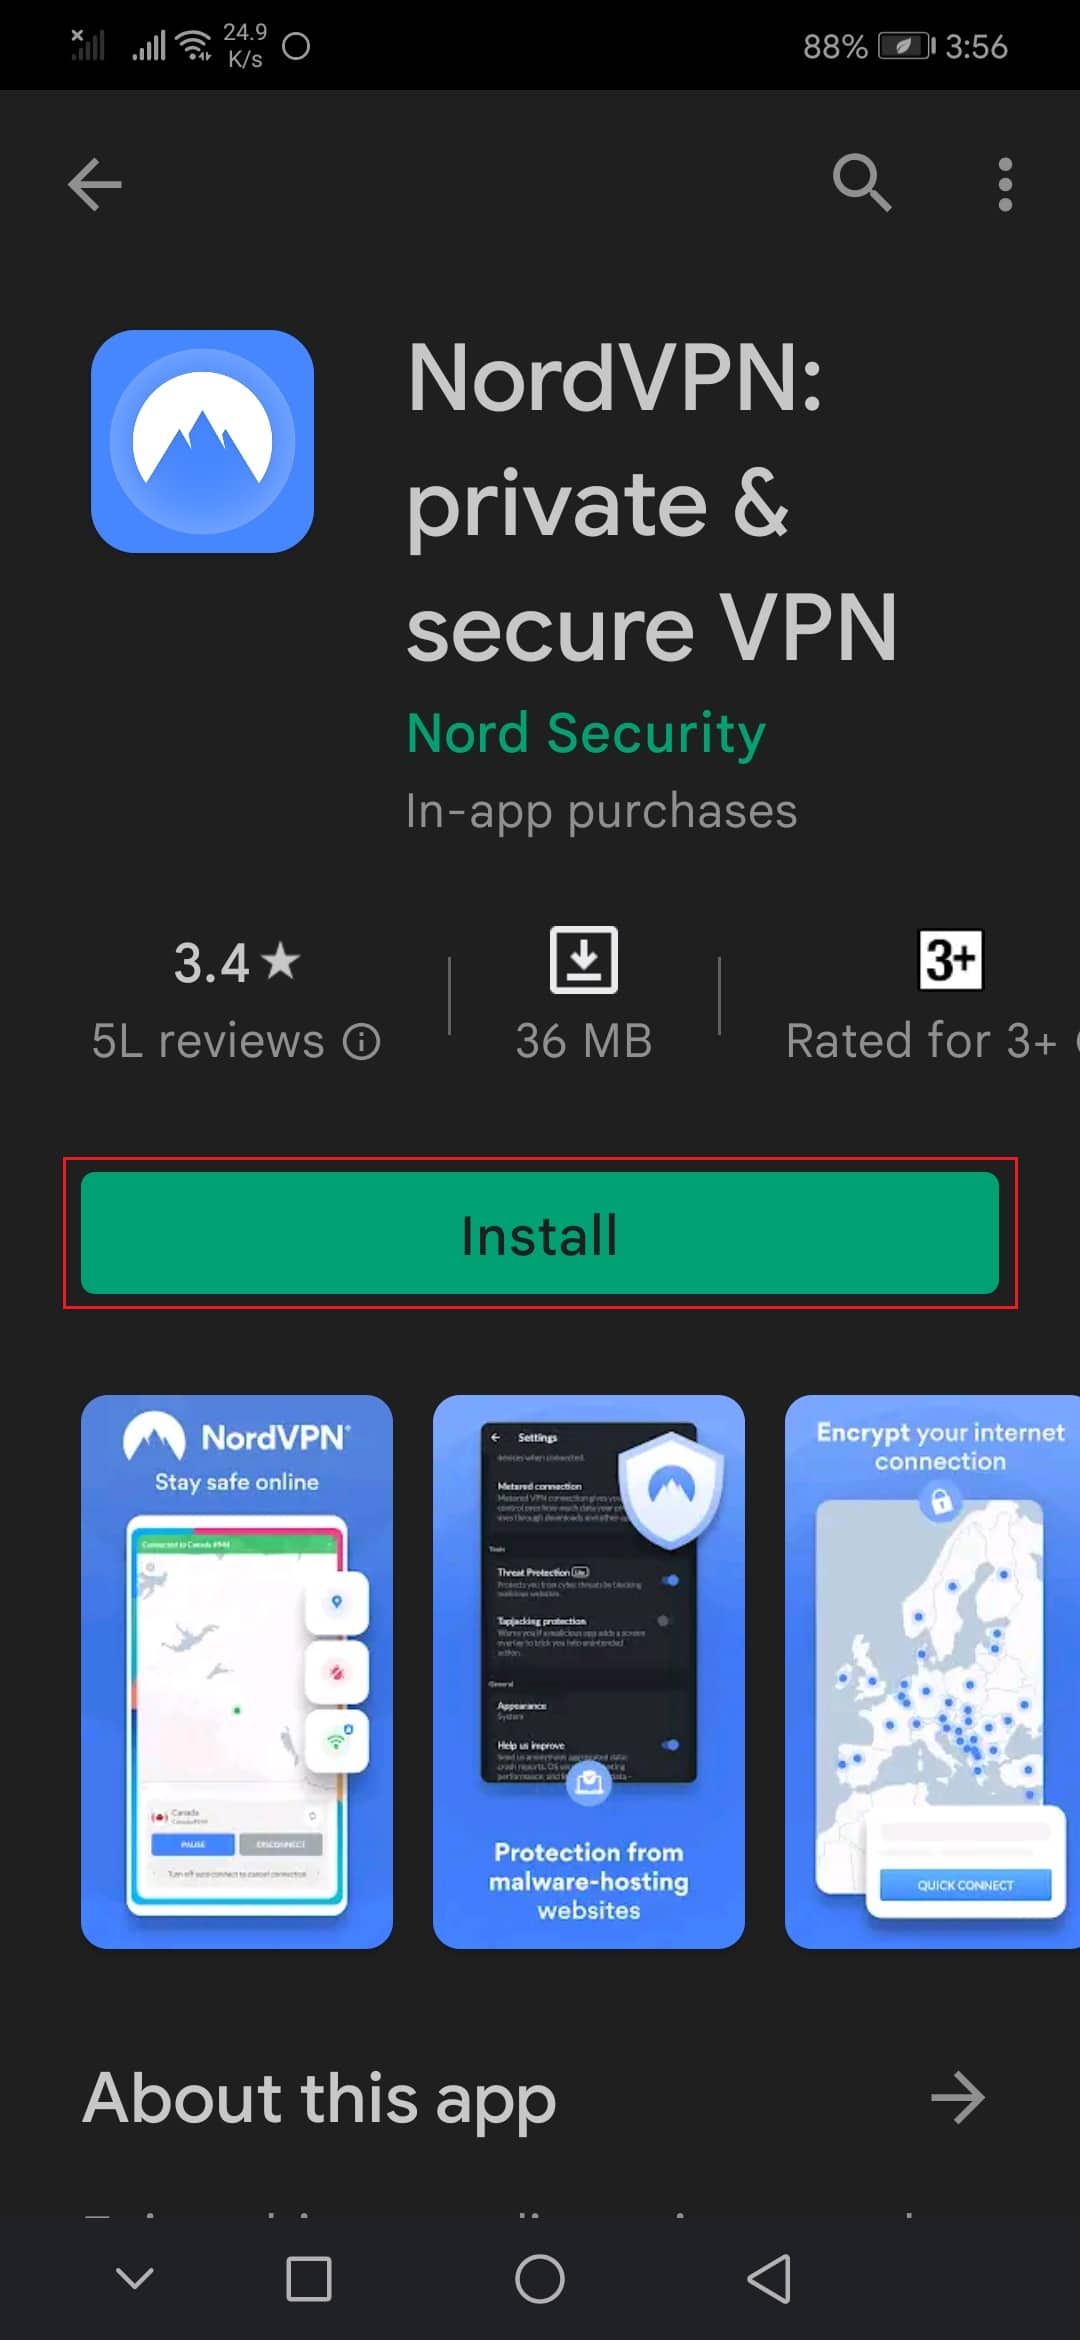 nordVPN Android app Playstore. Lagaðu villukóða 403 í Google Play Store